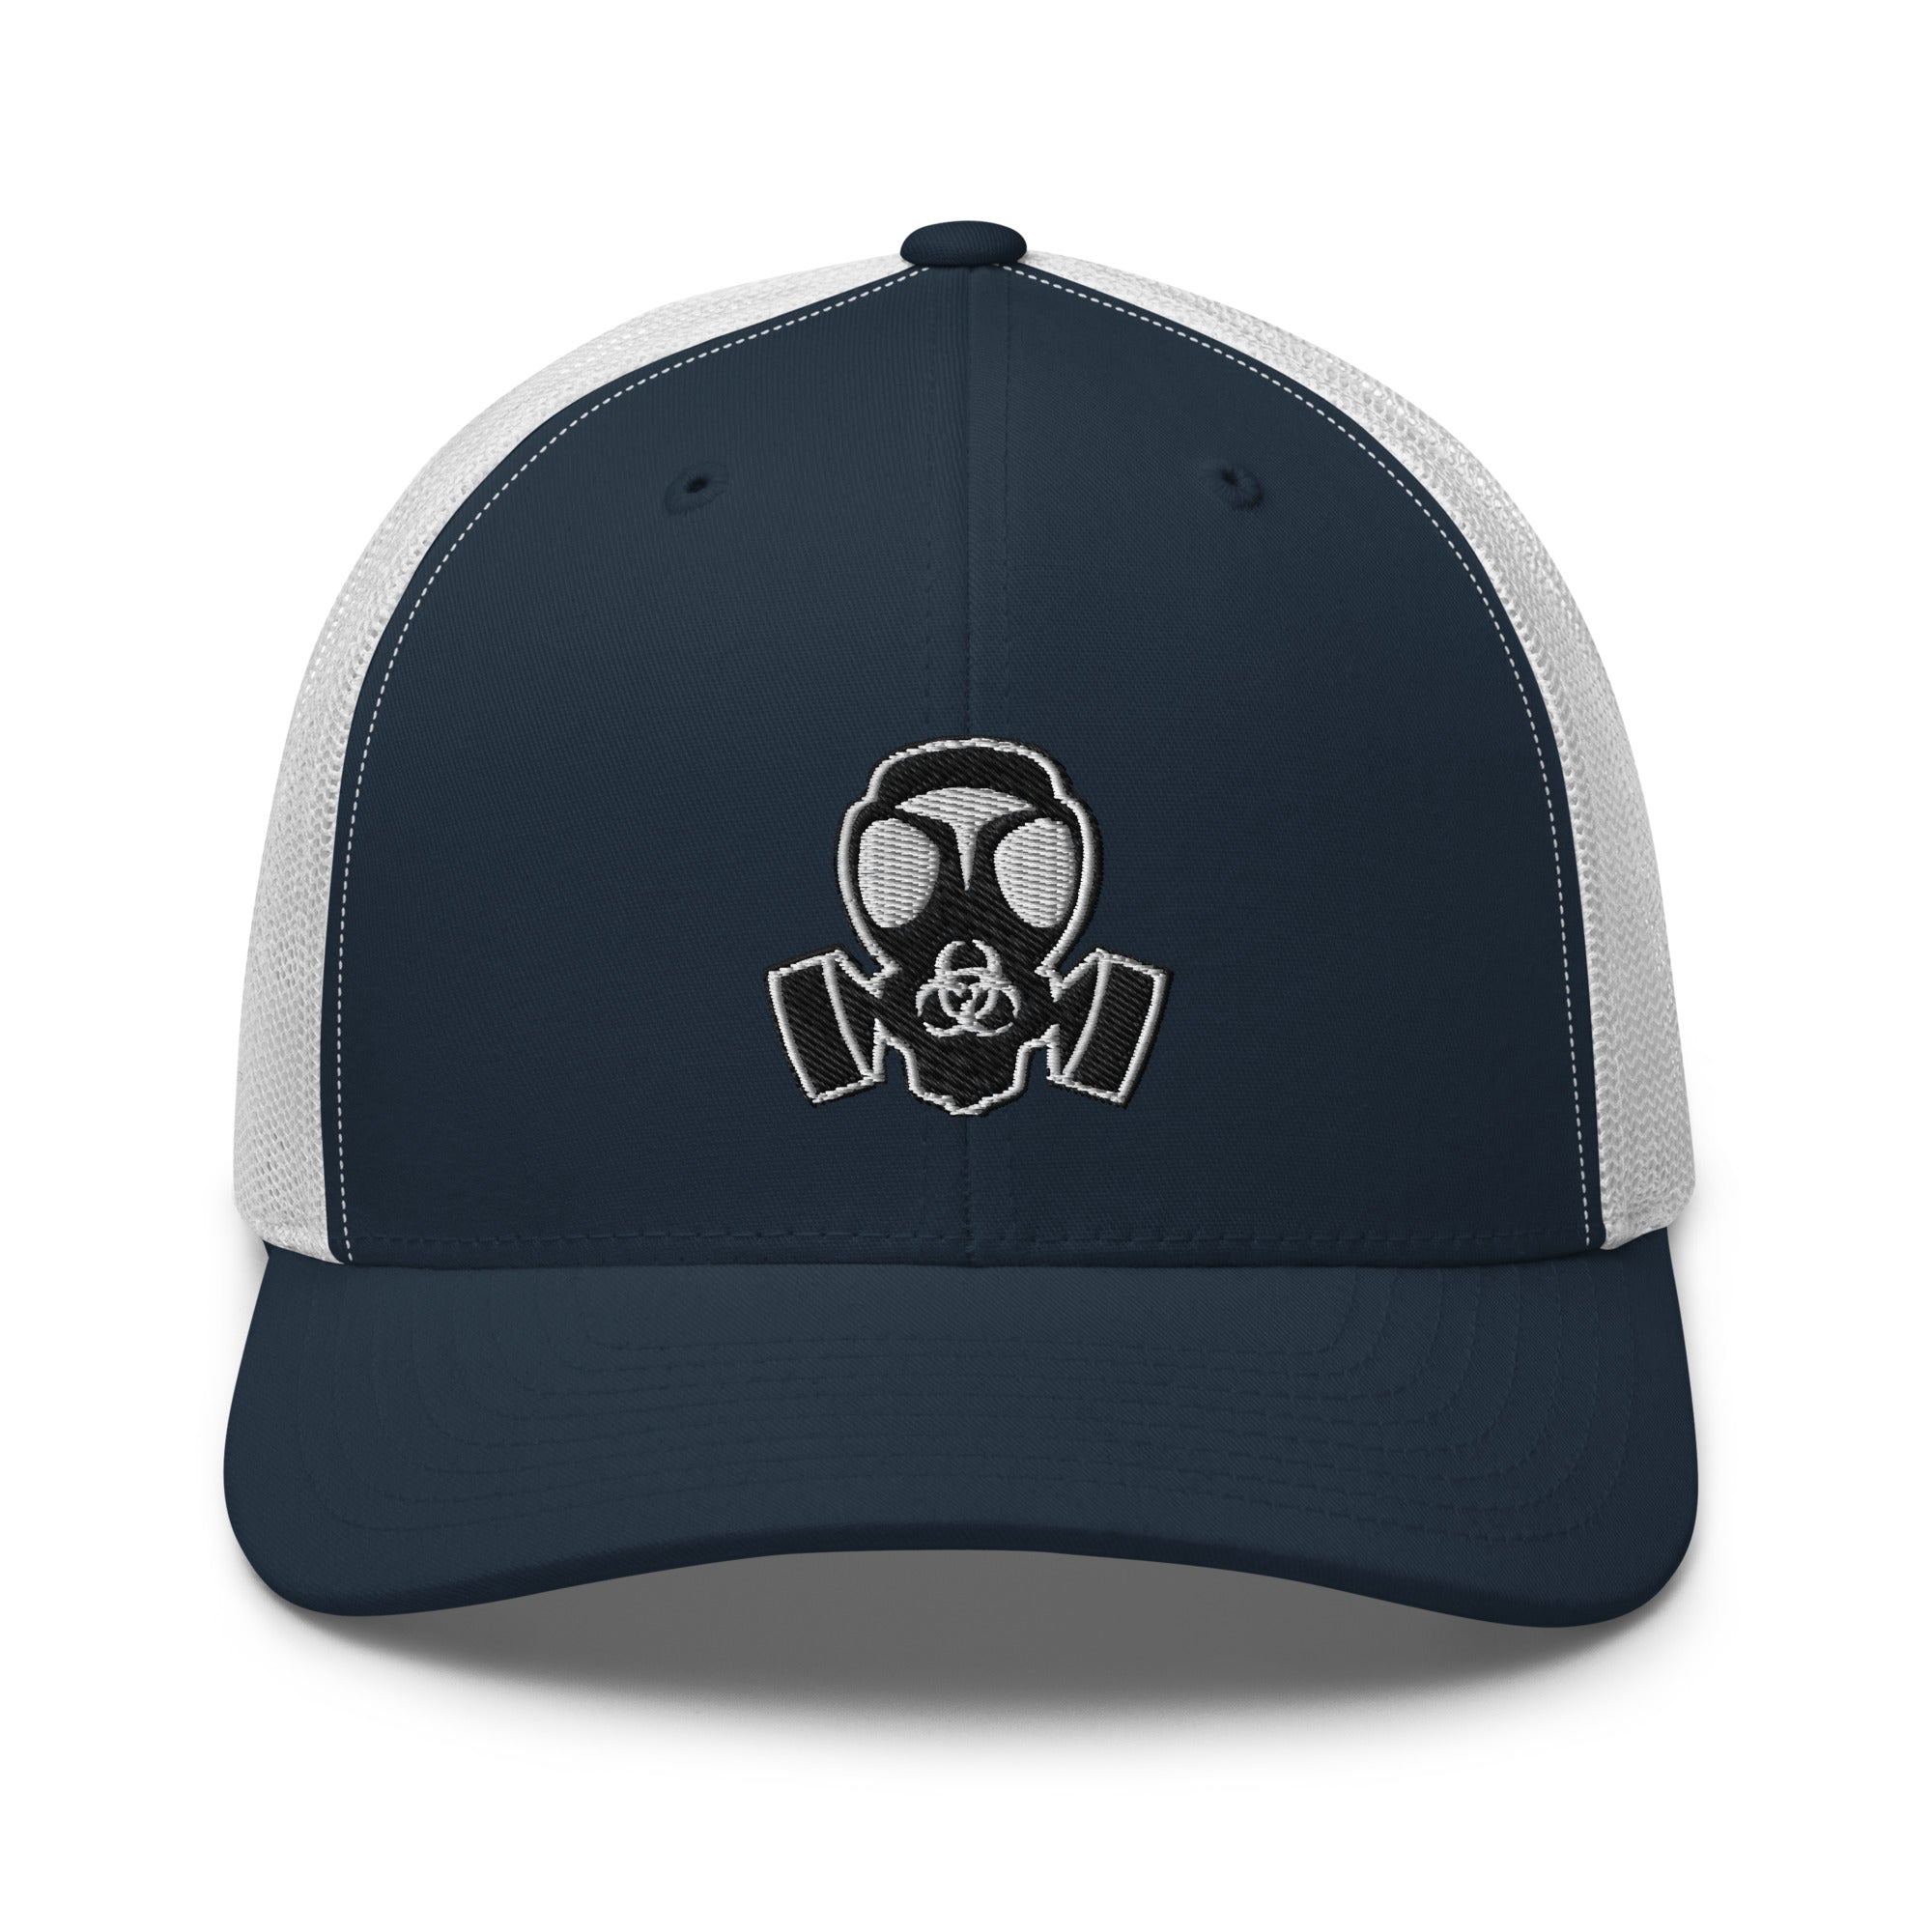 White Bio Hazard Gas Mask Embroidered Retro Trucker Cap Snapback Hat